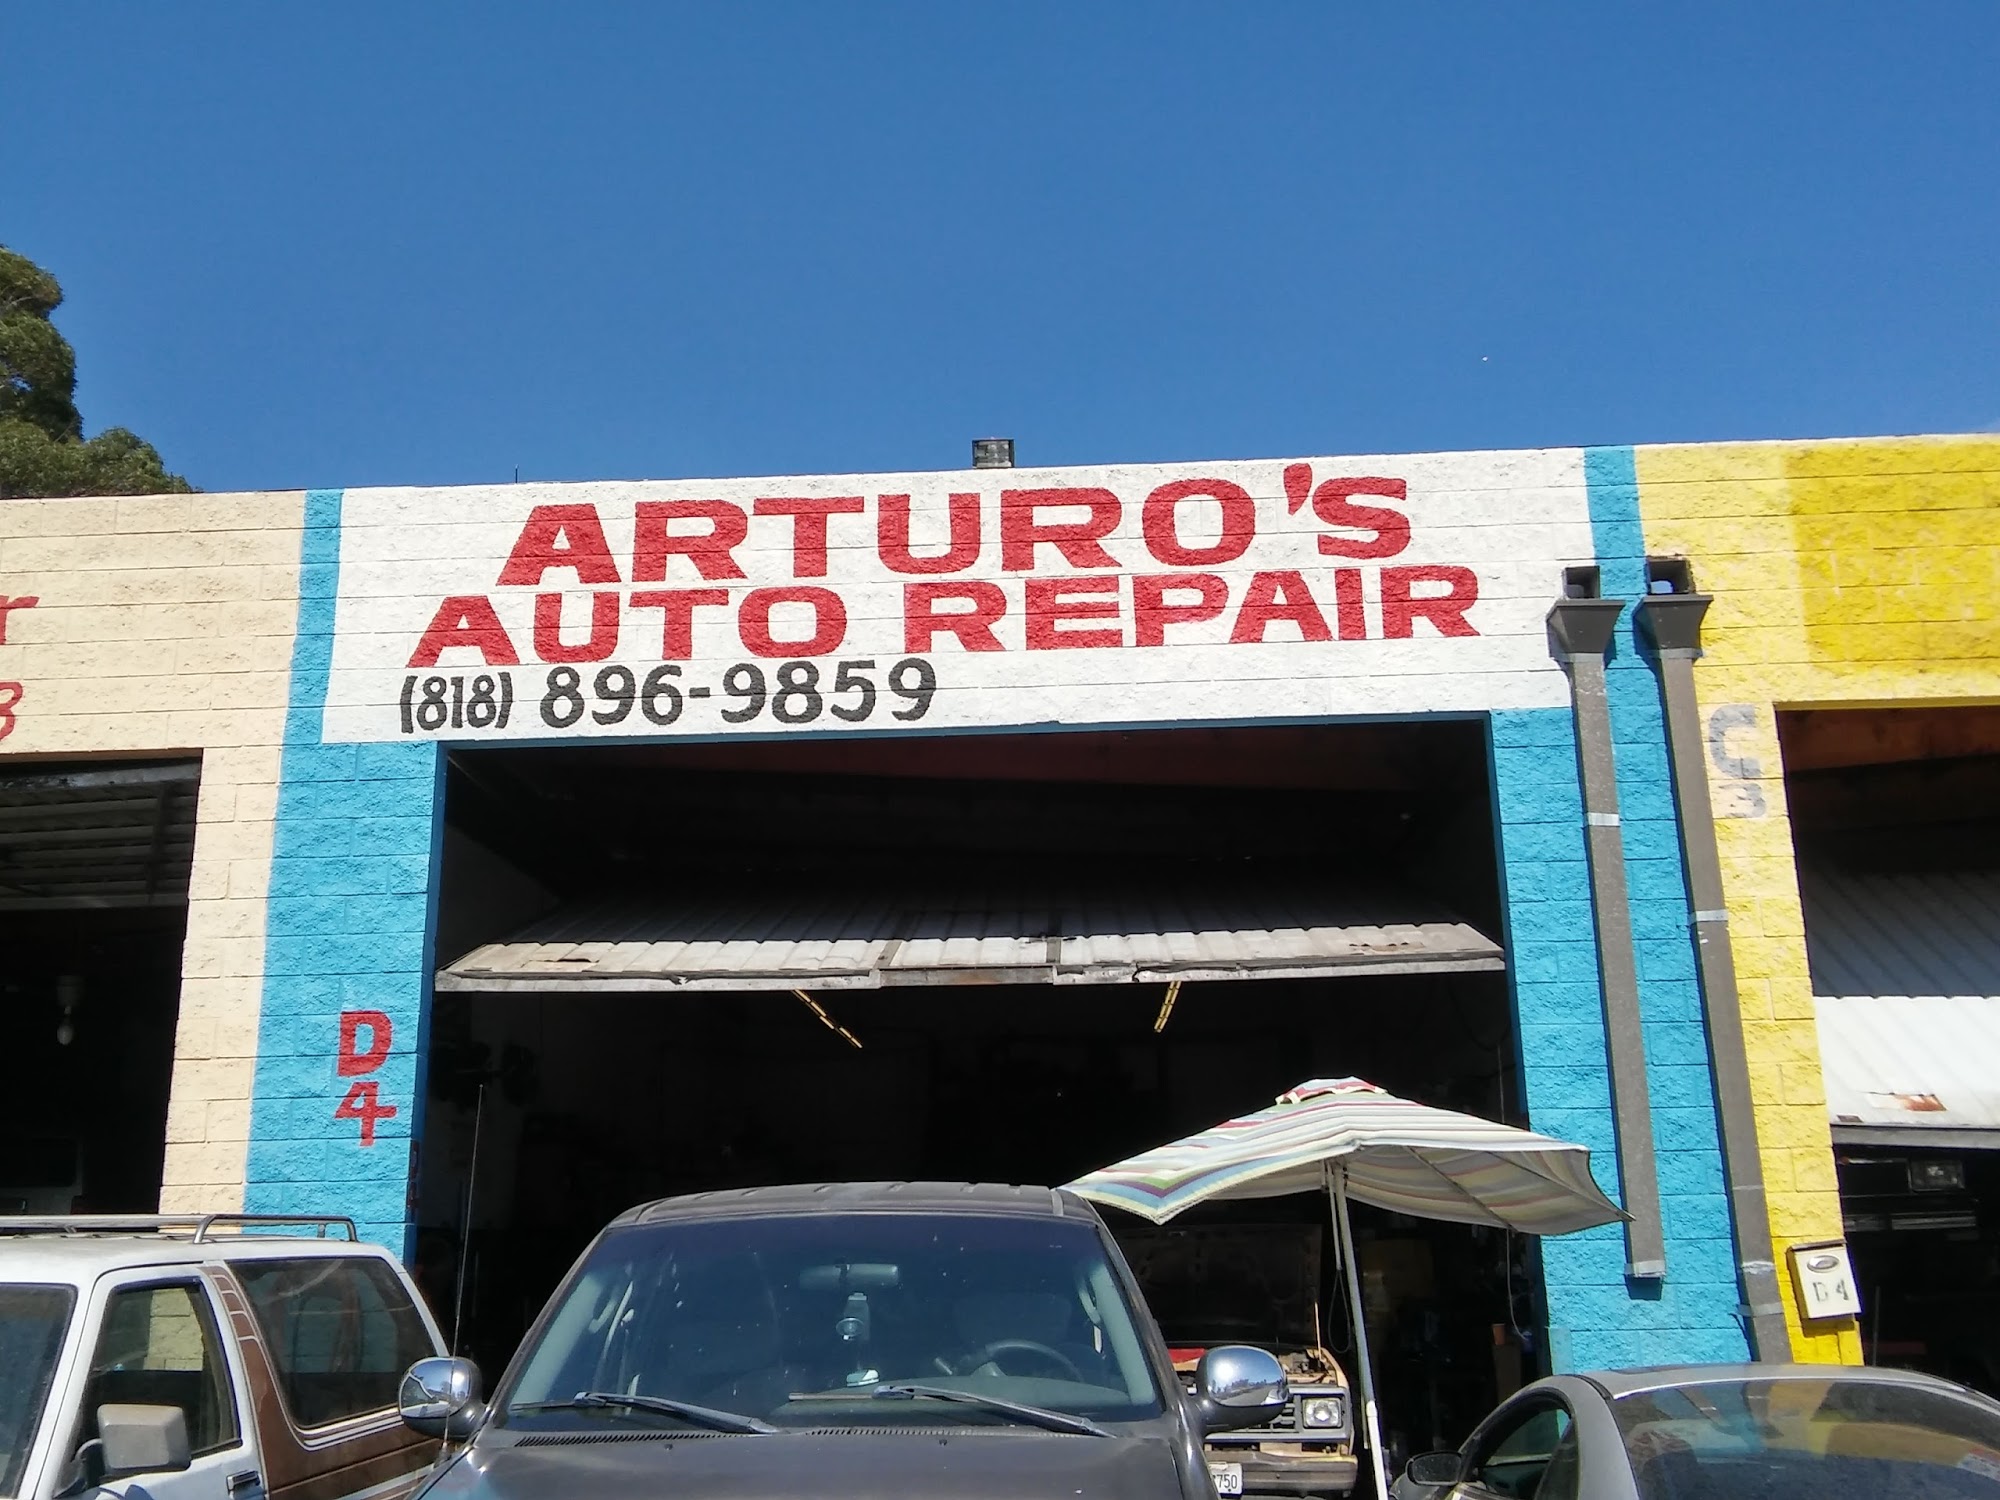 Arturo's Auto Repair